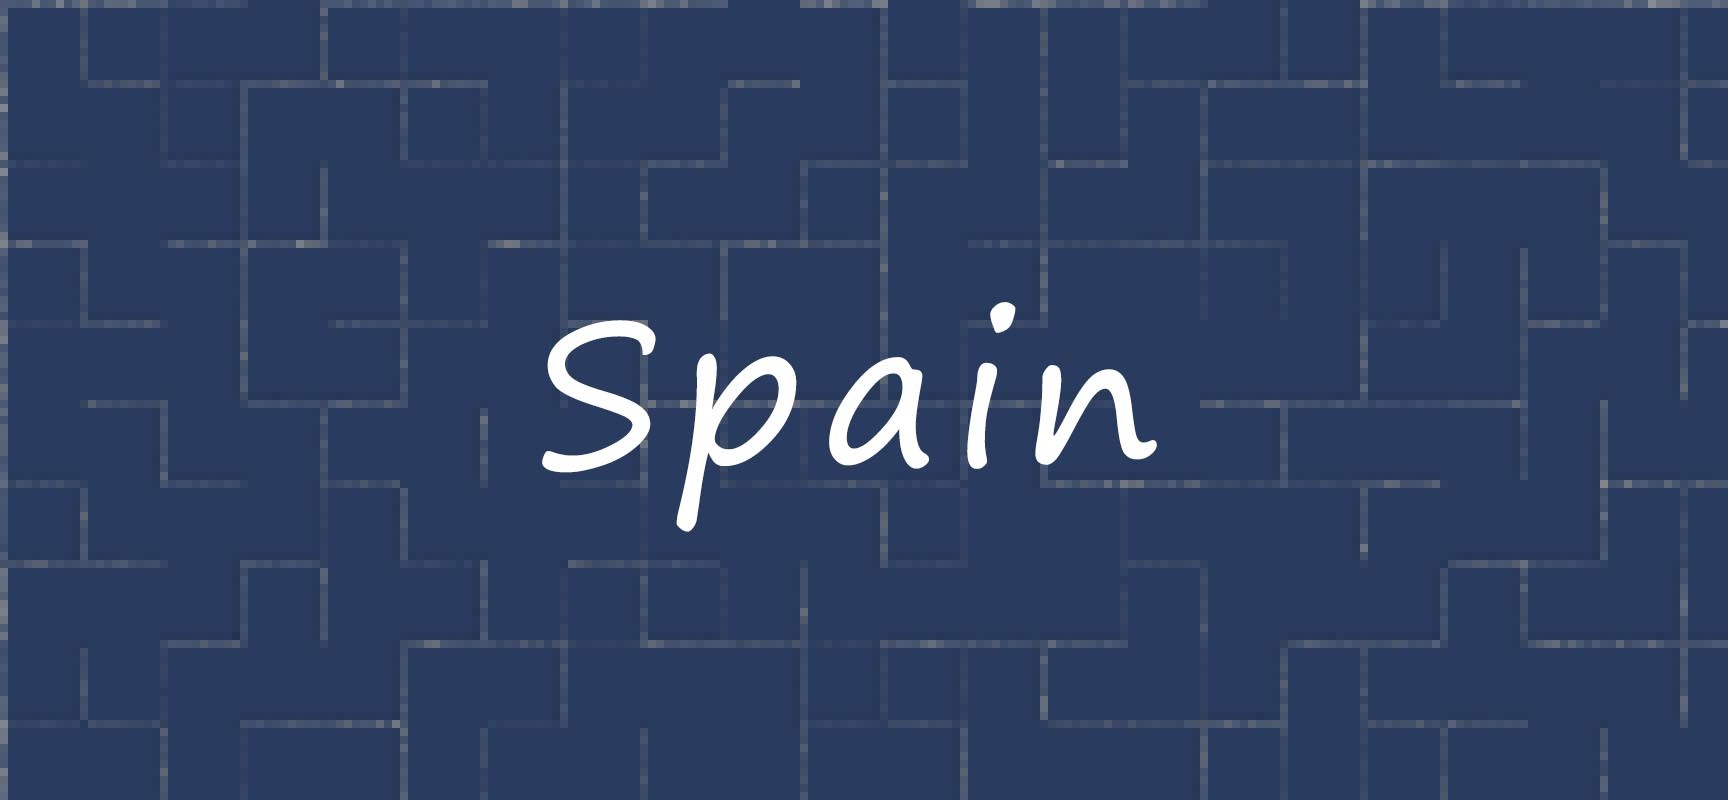 La Marca España recupera prestigio en el mundo